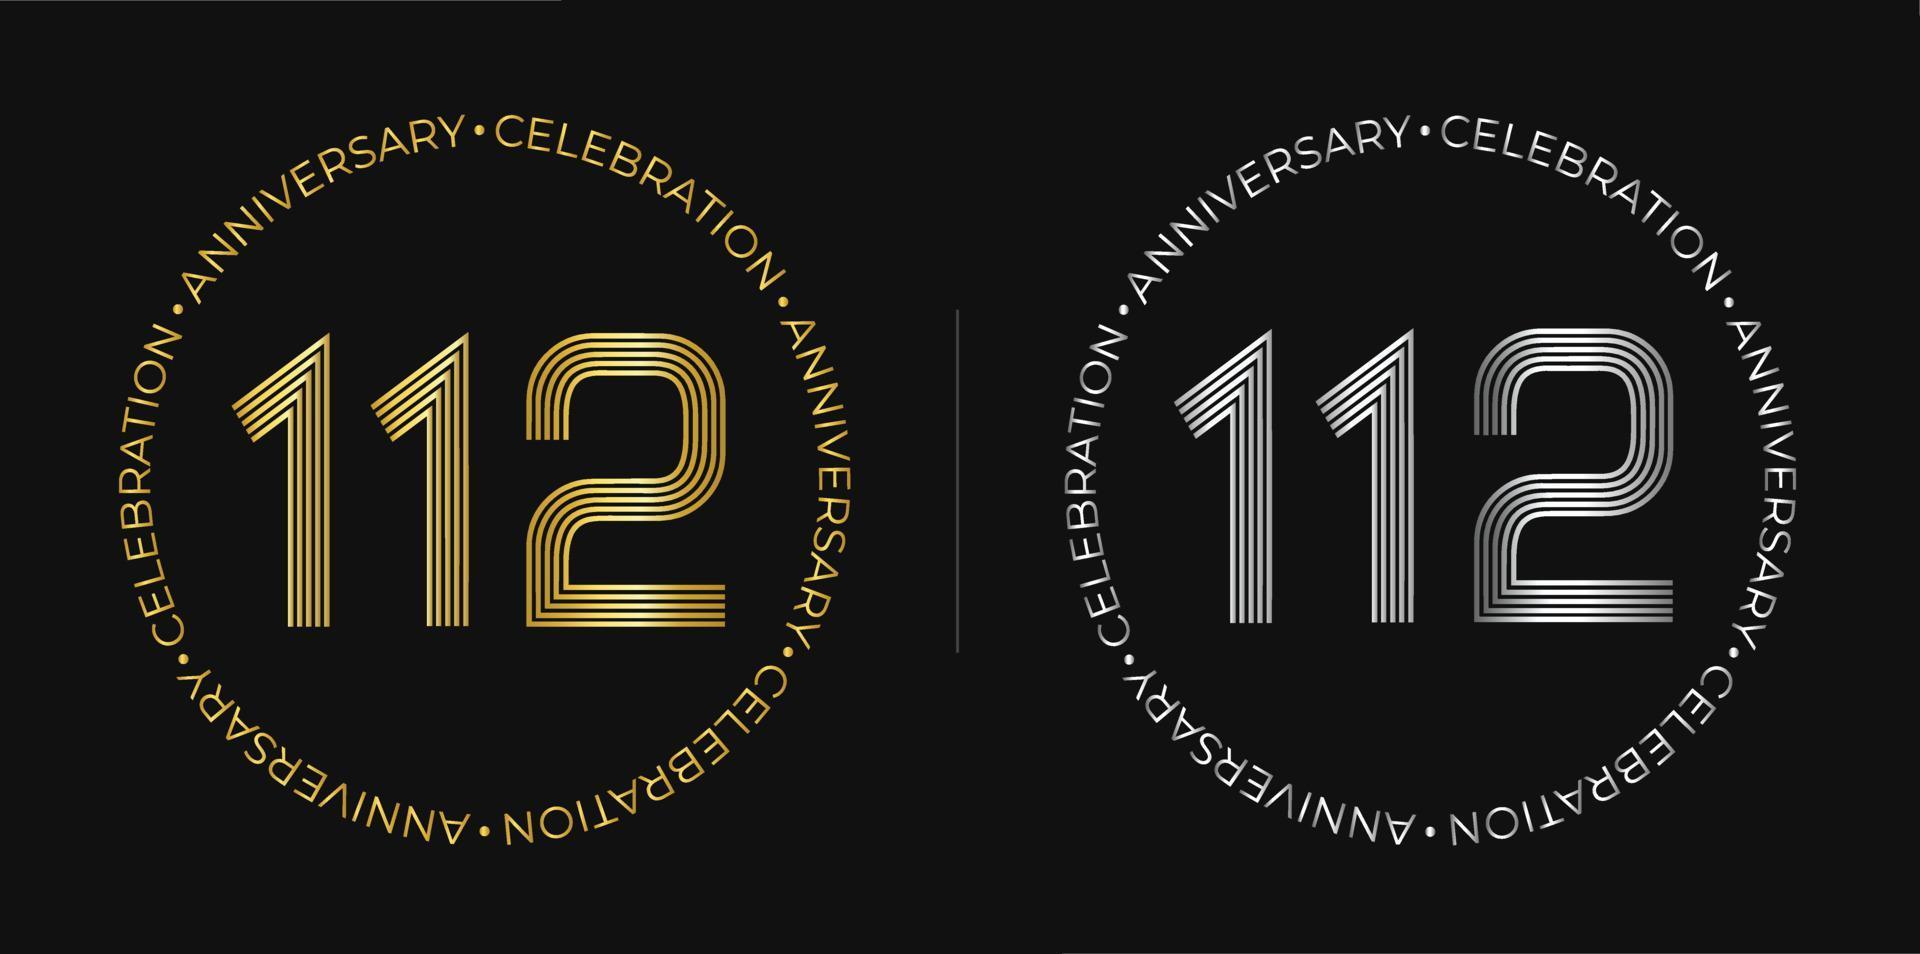 112º aniversário. banner de comemoração de aniversário de cento e doze anos nas cores dourada e prateada. logotipo circular com design de números originais. vetor